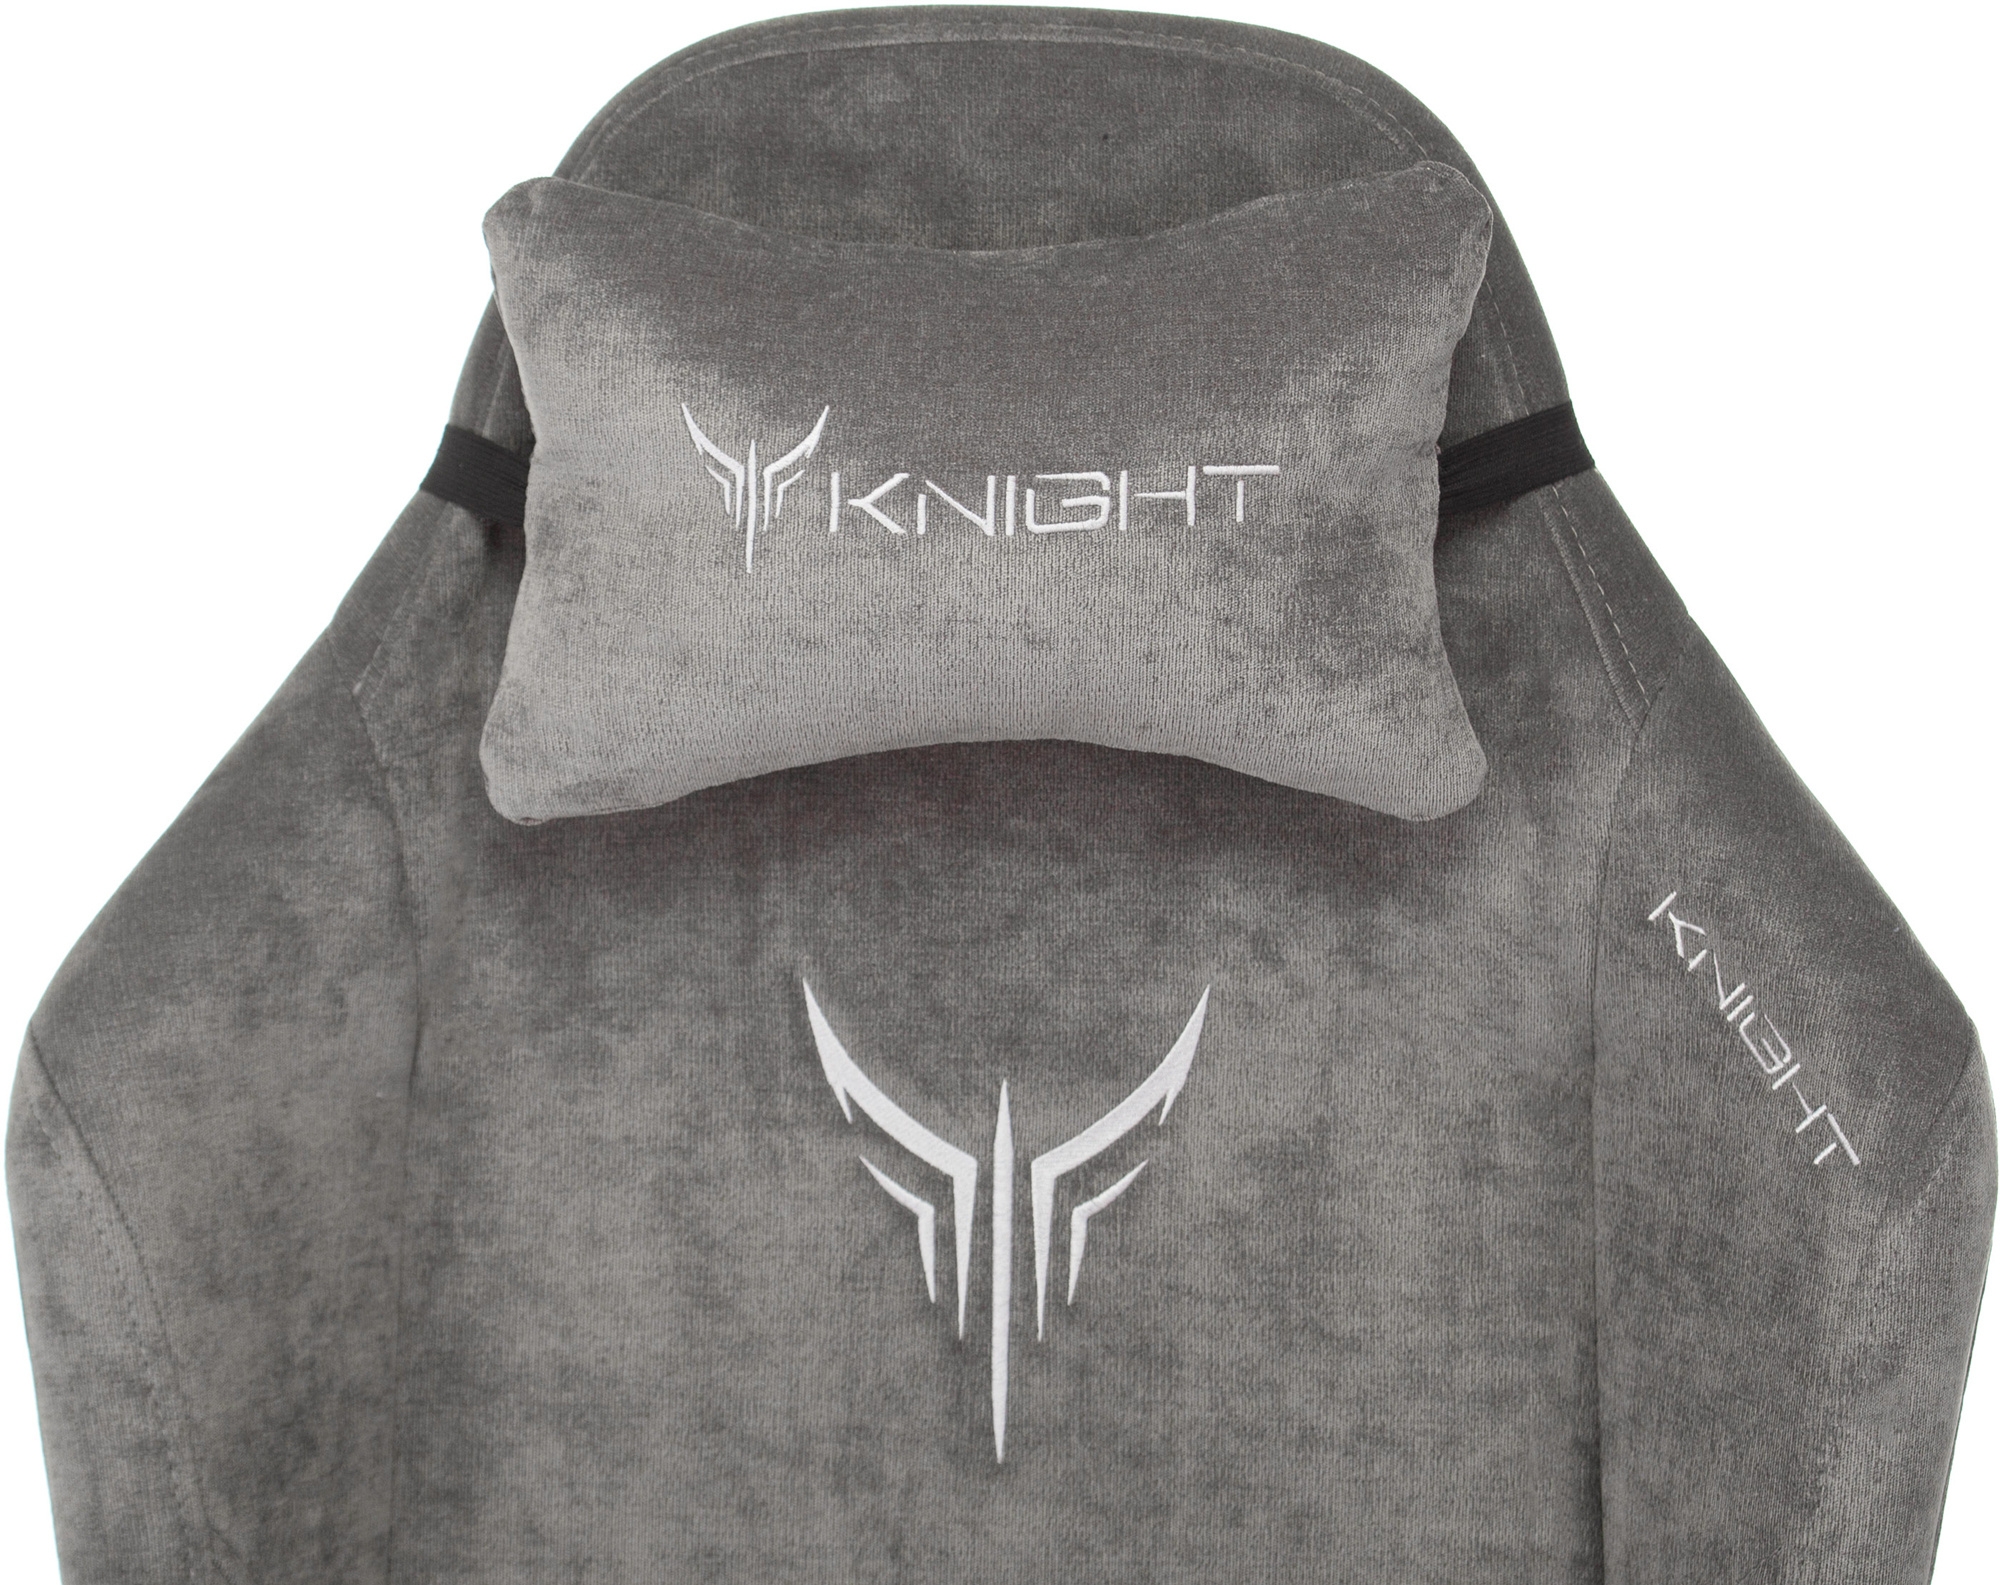 Knight n1 Fabric